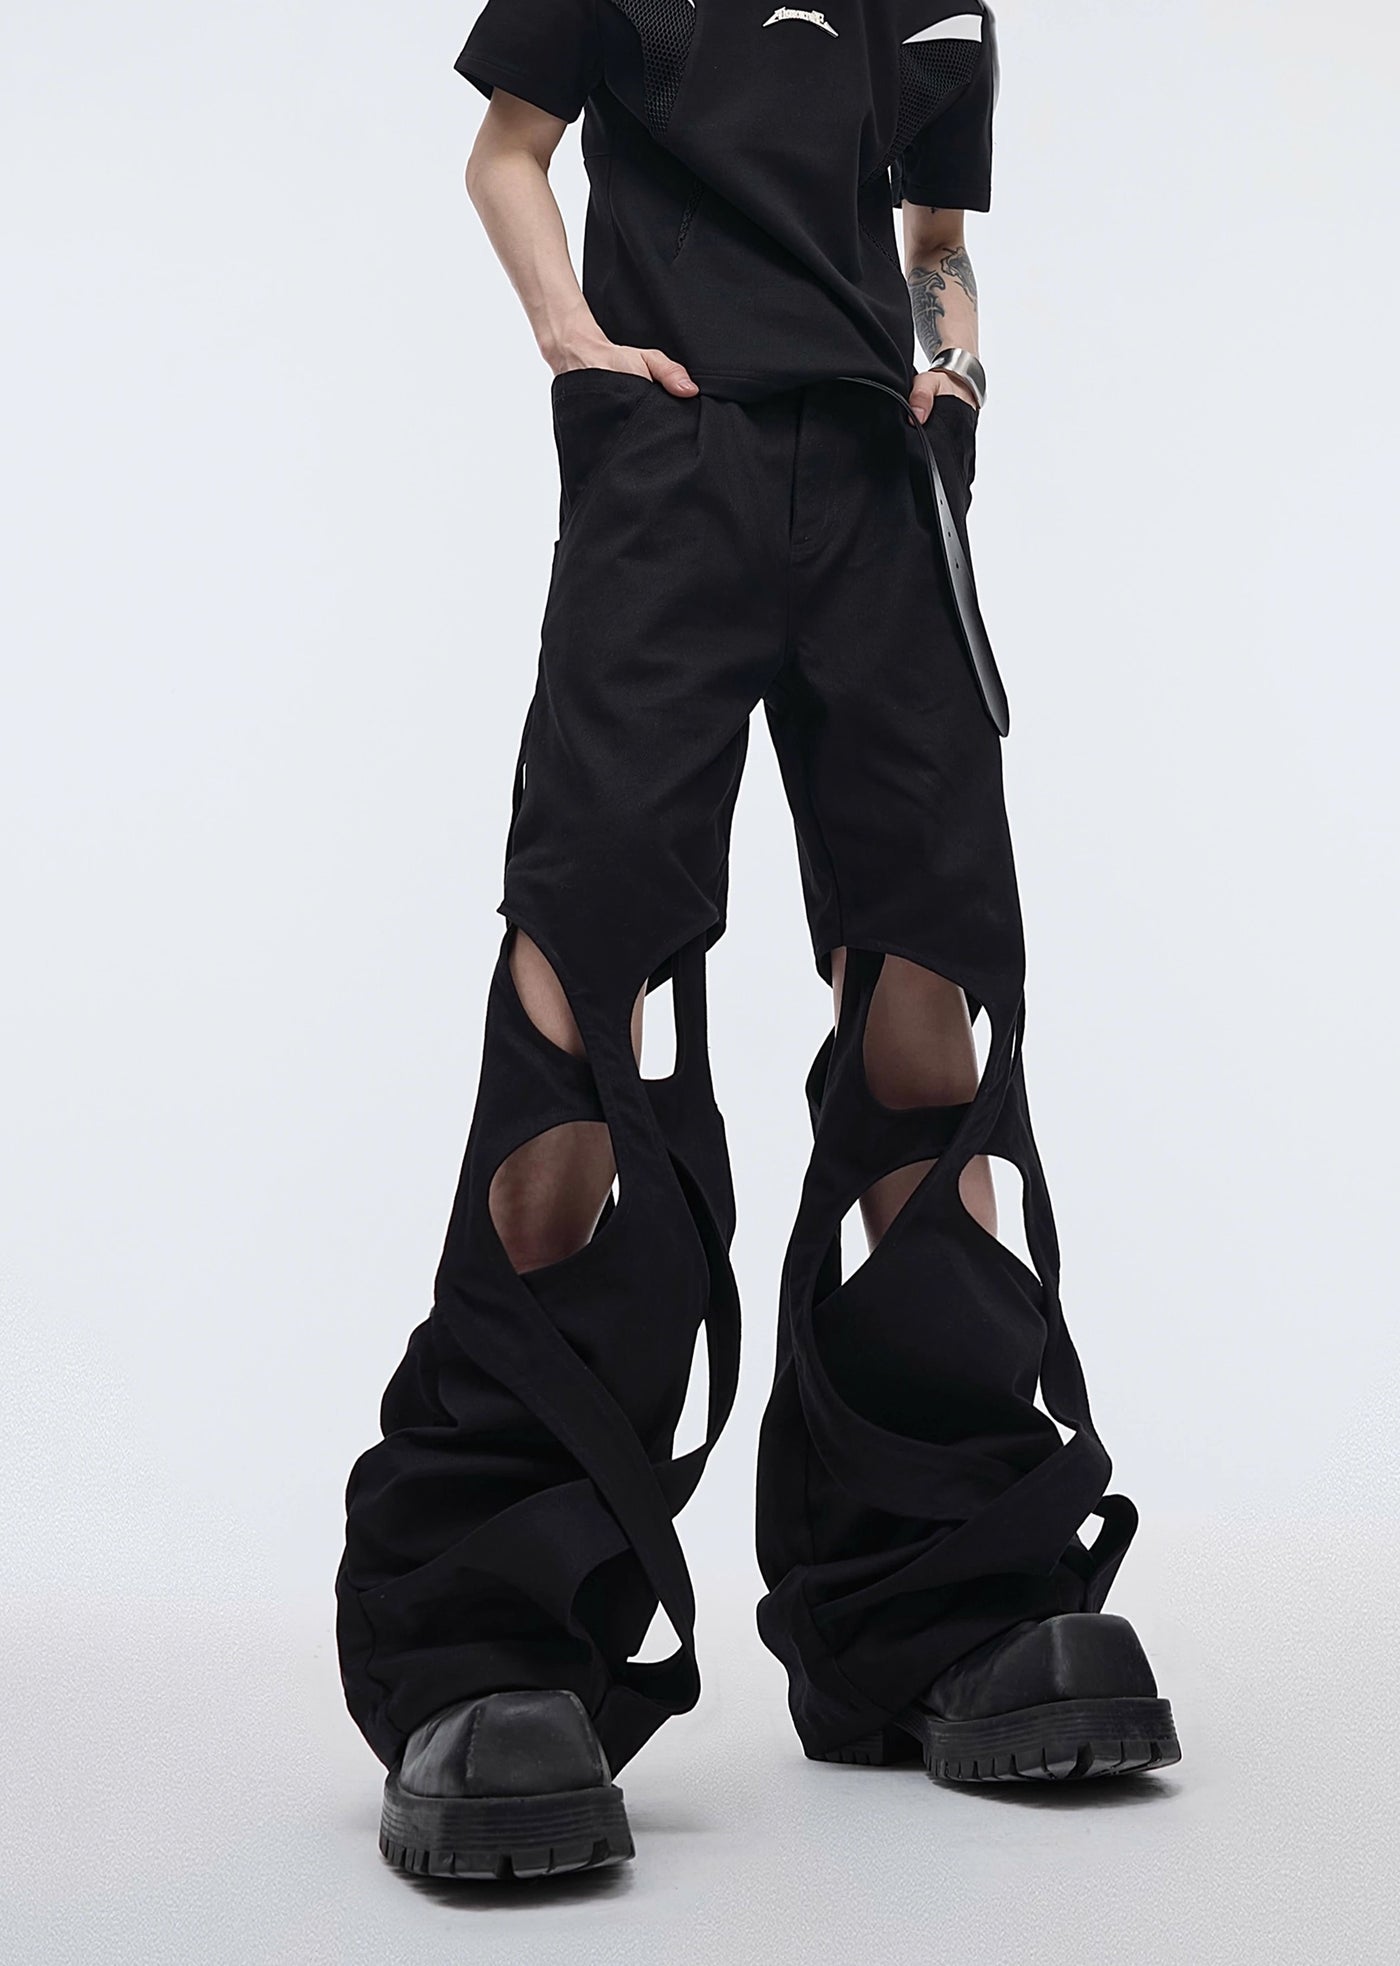 【Culture E】Cross hyper design grace wide over pants  CE0120